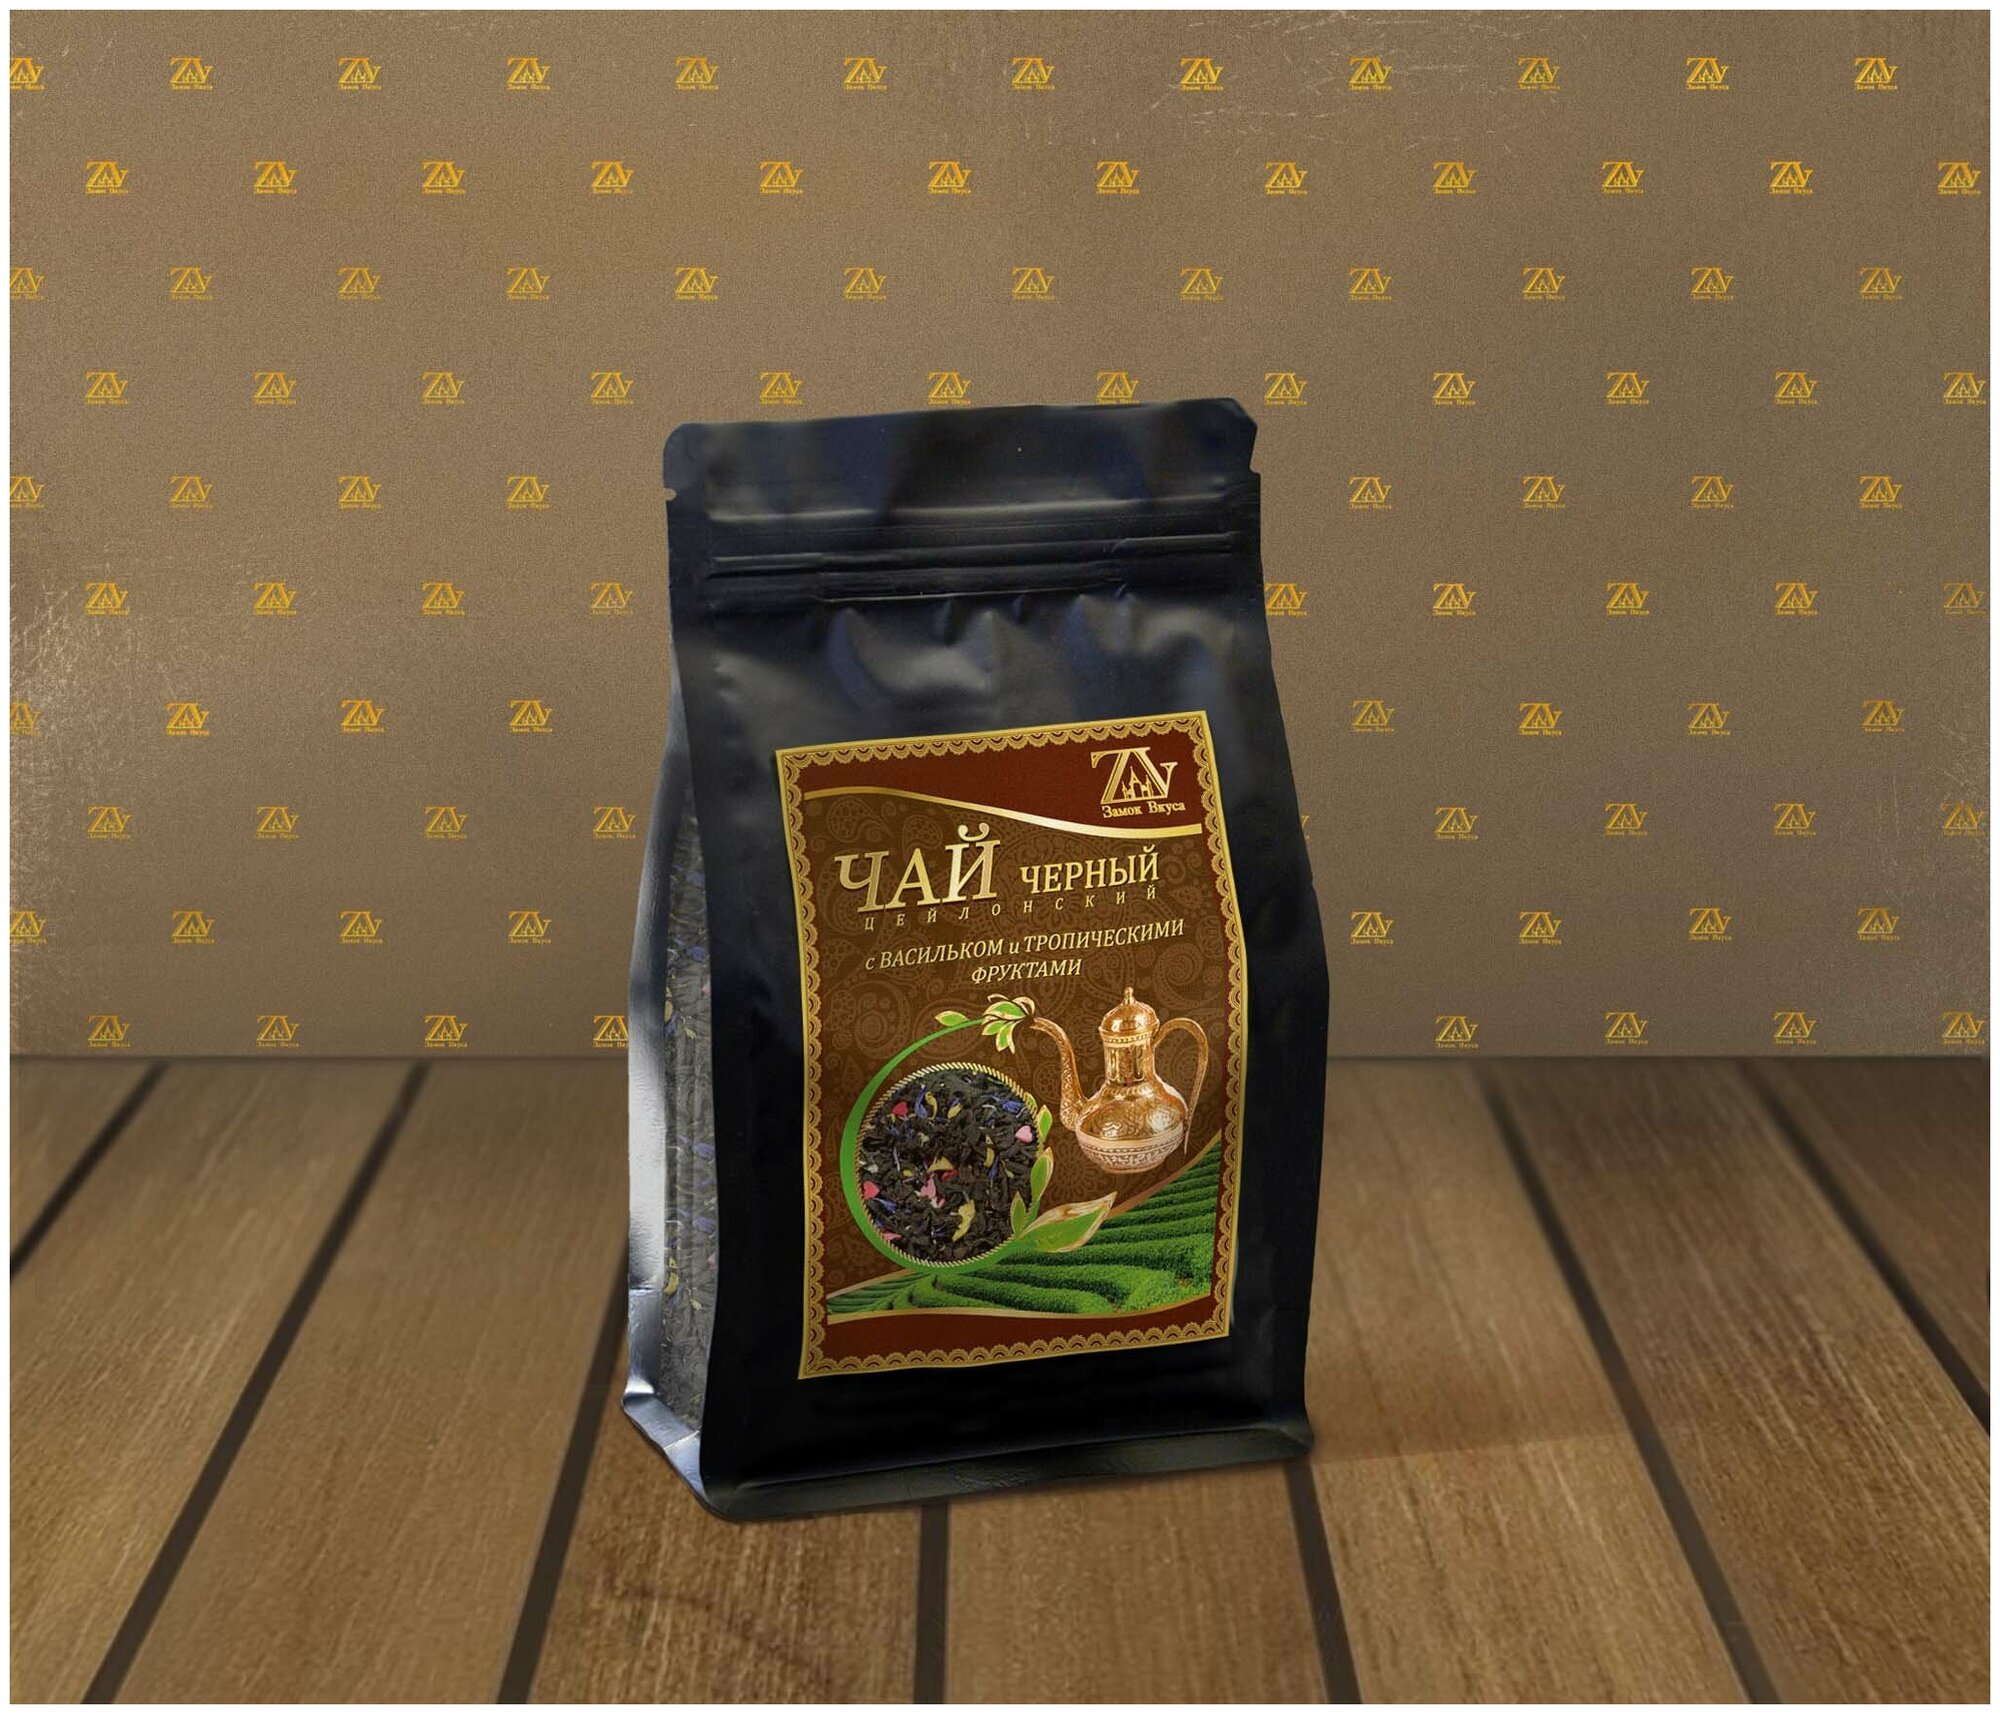 Черный чай Цейлонский, с Васильком и Тропическими фруктами, 200 гр. в пакете